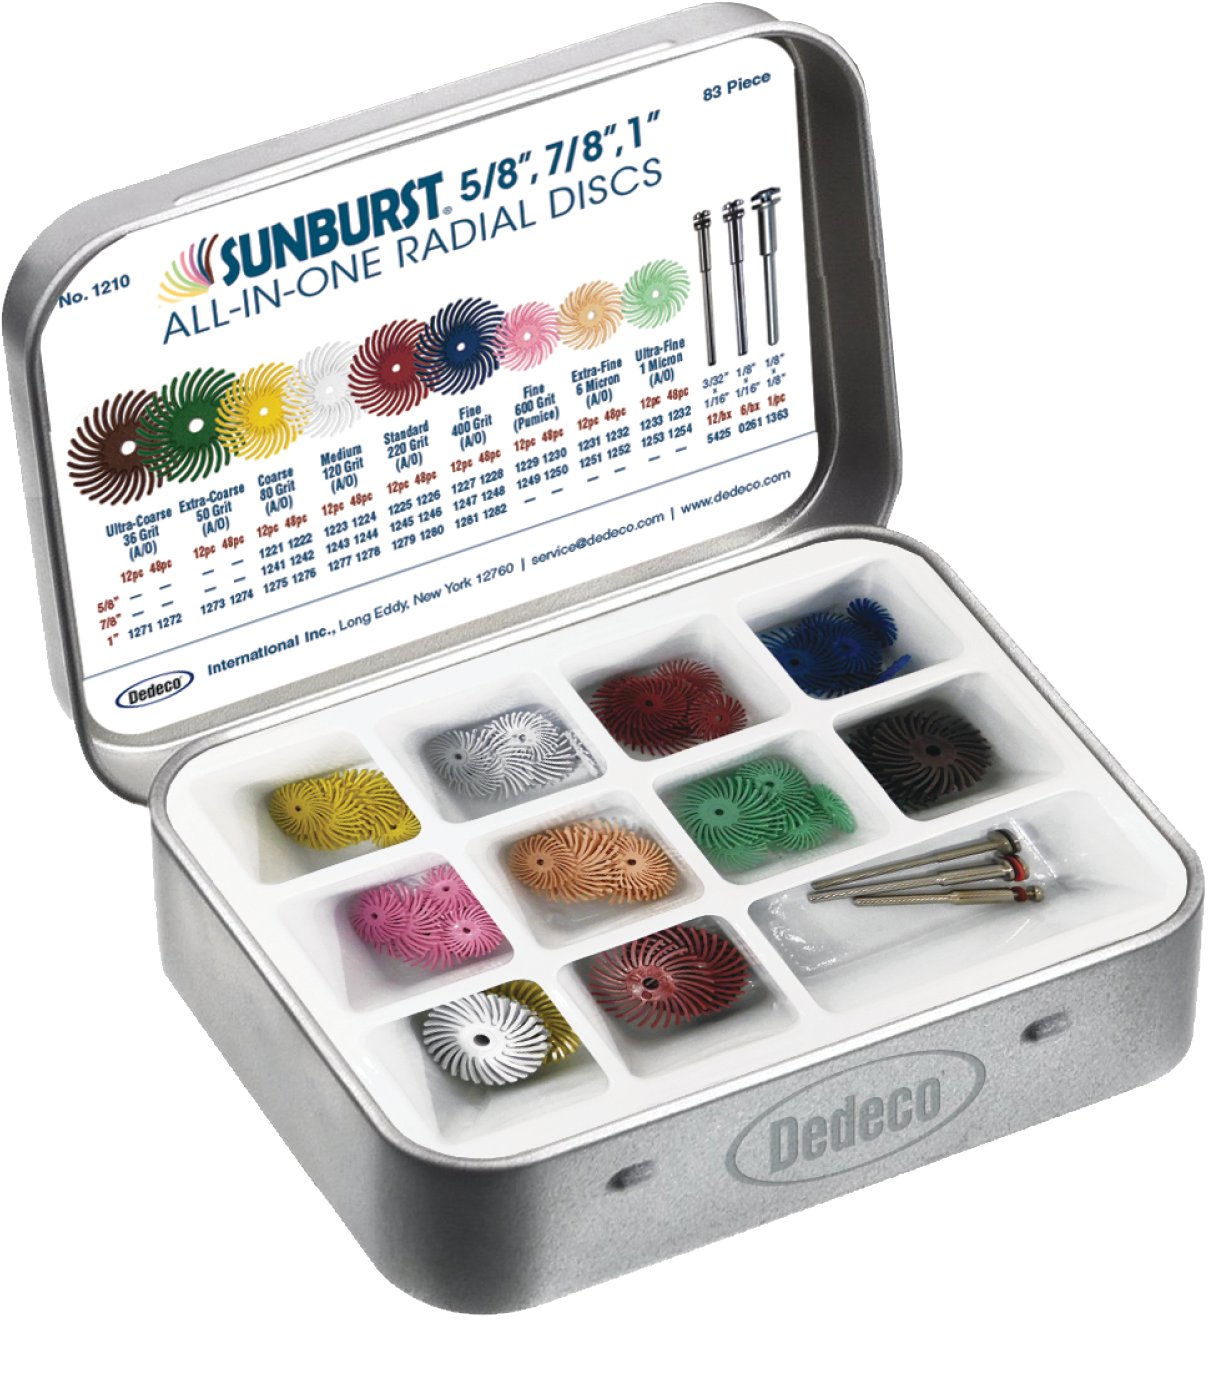 Dedeco® Sunburst® All-In-One Radial Discs Assortment Kit  